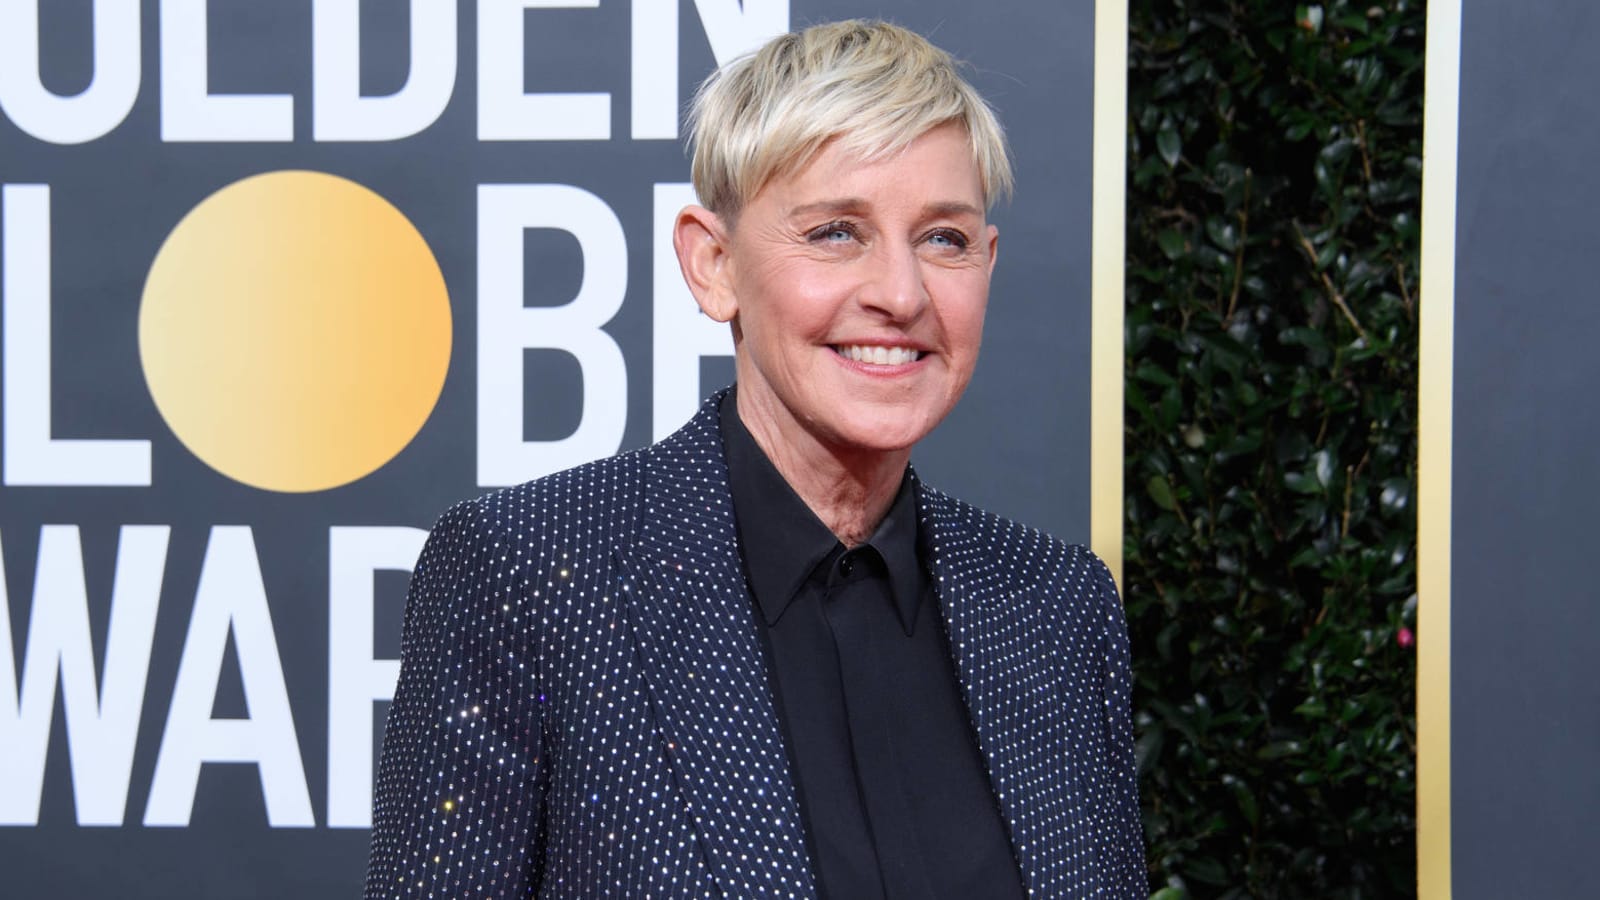 Details about 'The Ellen DeGeneres Show' final season revealed